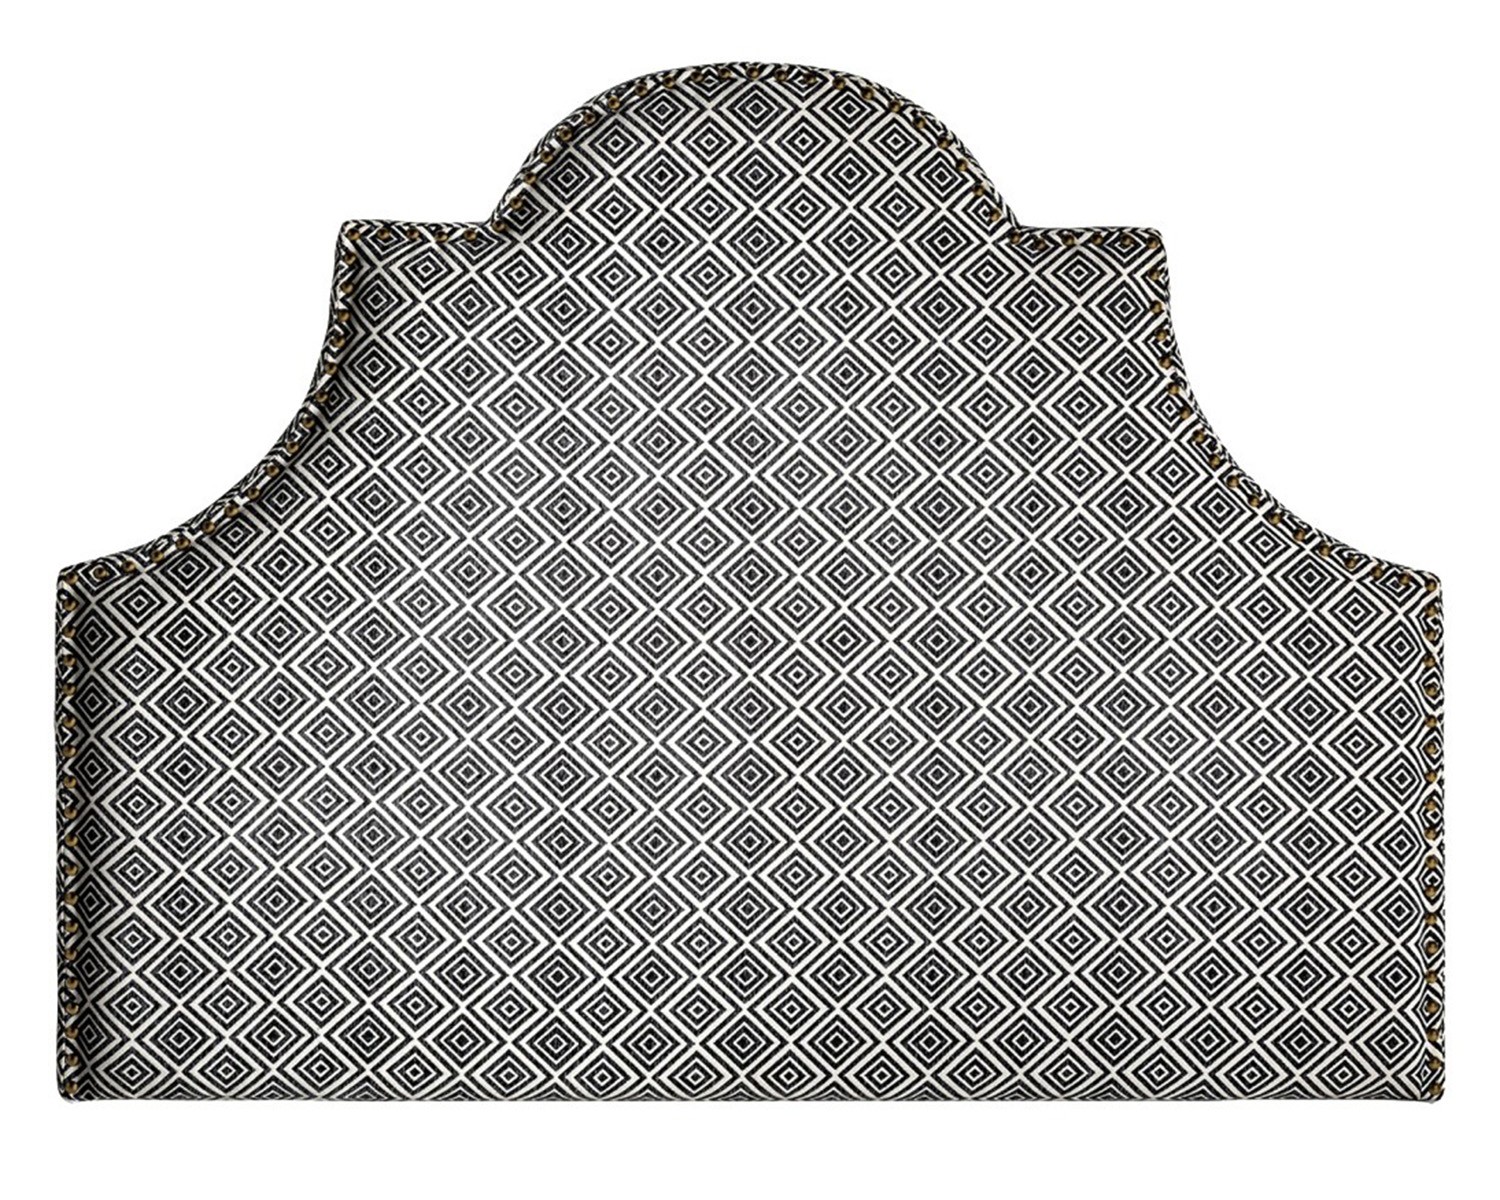 Estila Moderní čalouněné čelo postele Spear s černo-bílým vzorem a mosazným vybíjením 160cm